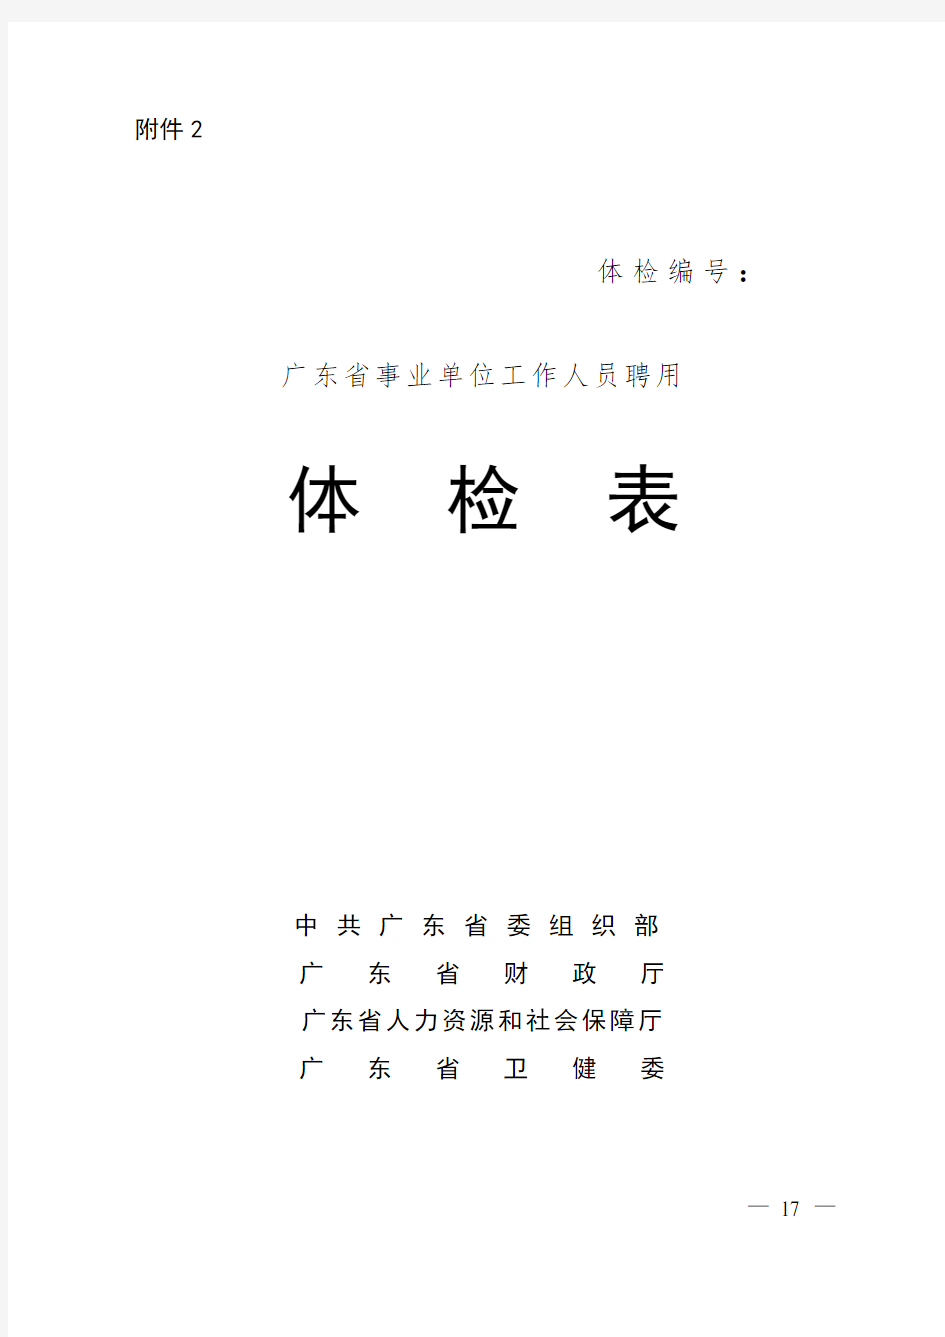 广东省事业单位公开招聘人员体检表